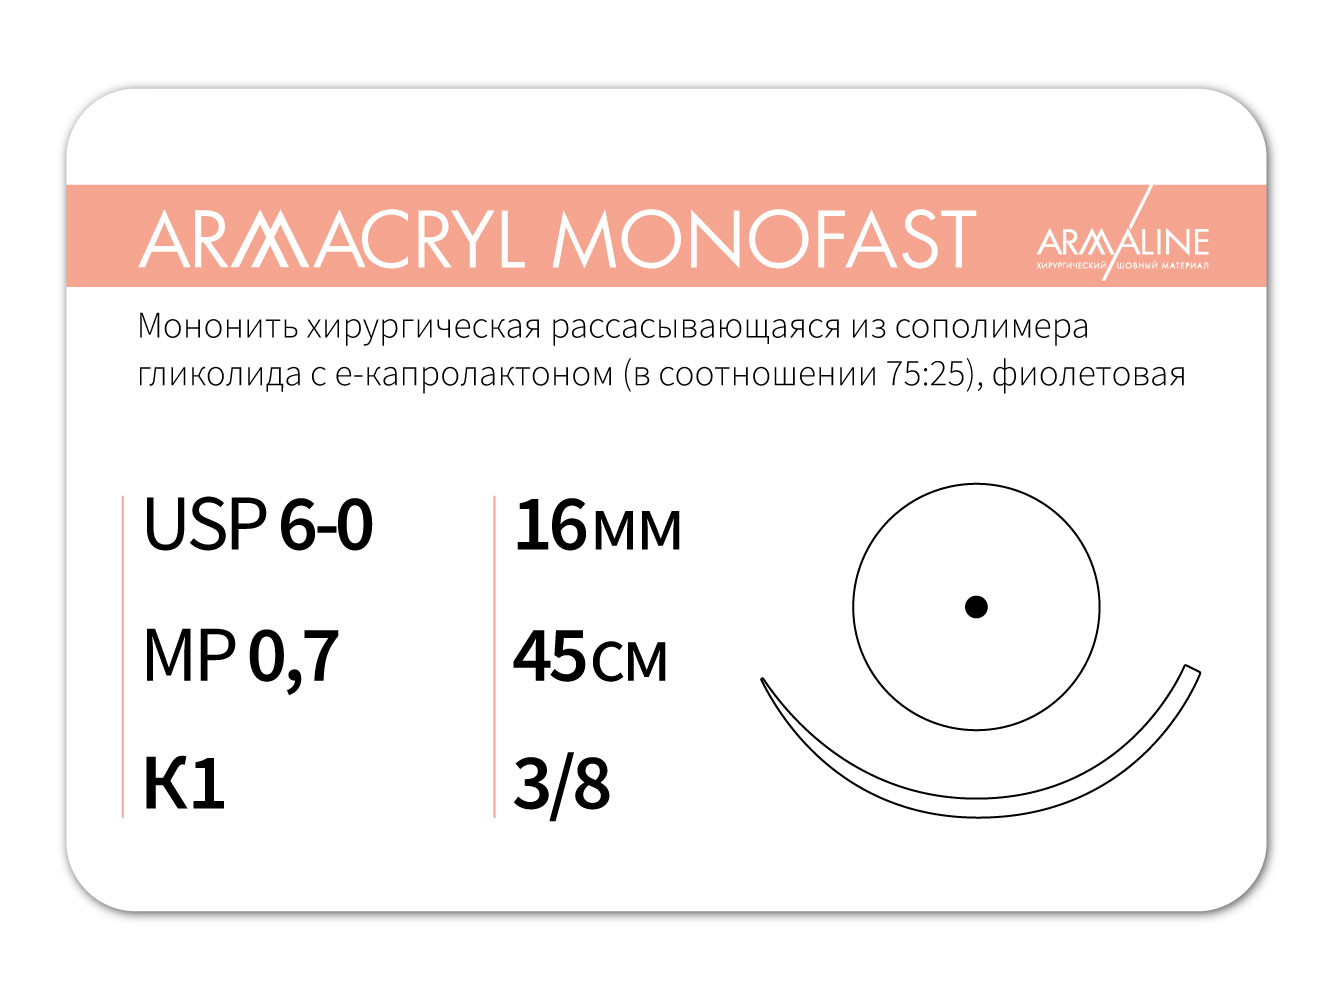 ARMACRYL MONOFAST/Армакрил монофаст (6-0) 45 см - материал хирургический шовный стерильный с атравматической колющей иглой